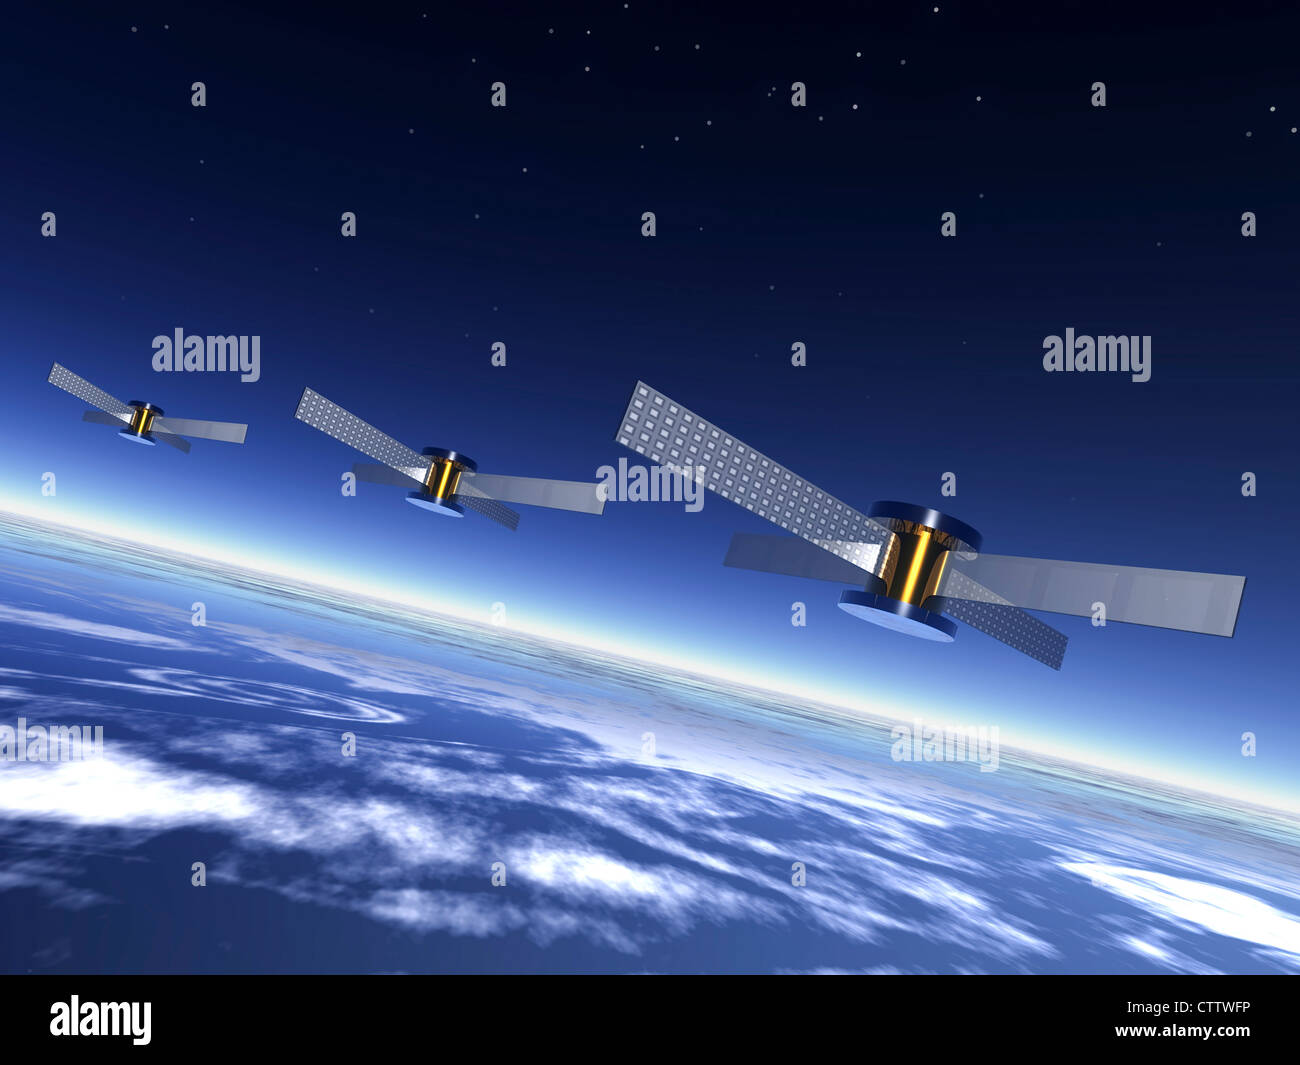 3 Satelliten im All über der Erde Stock Photo